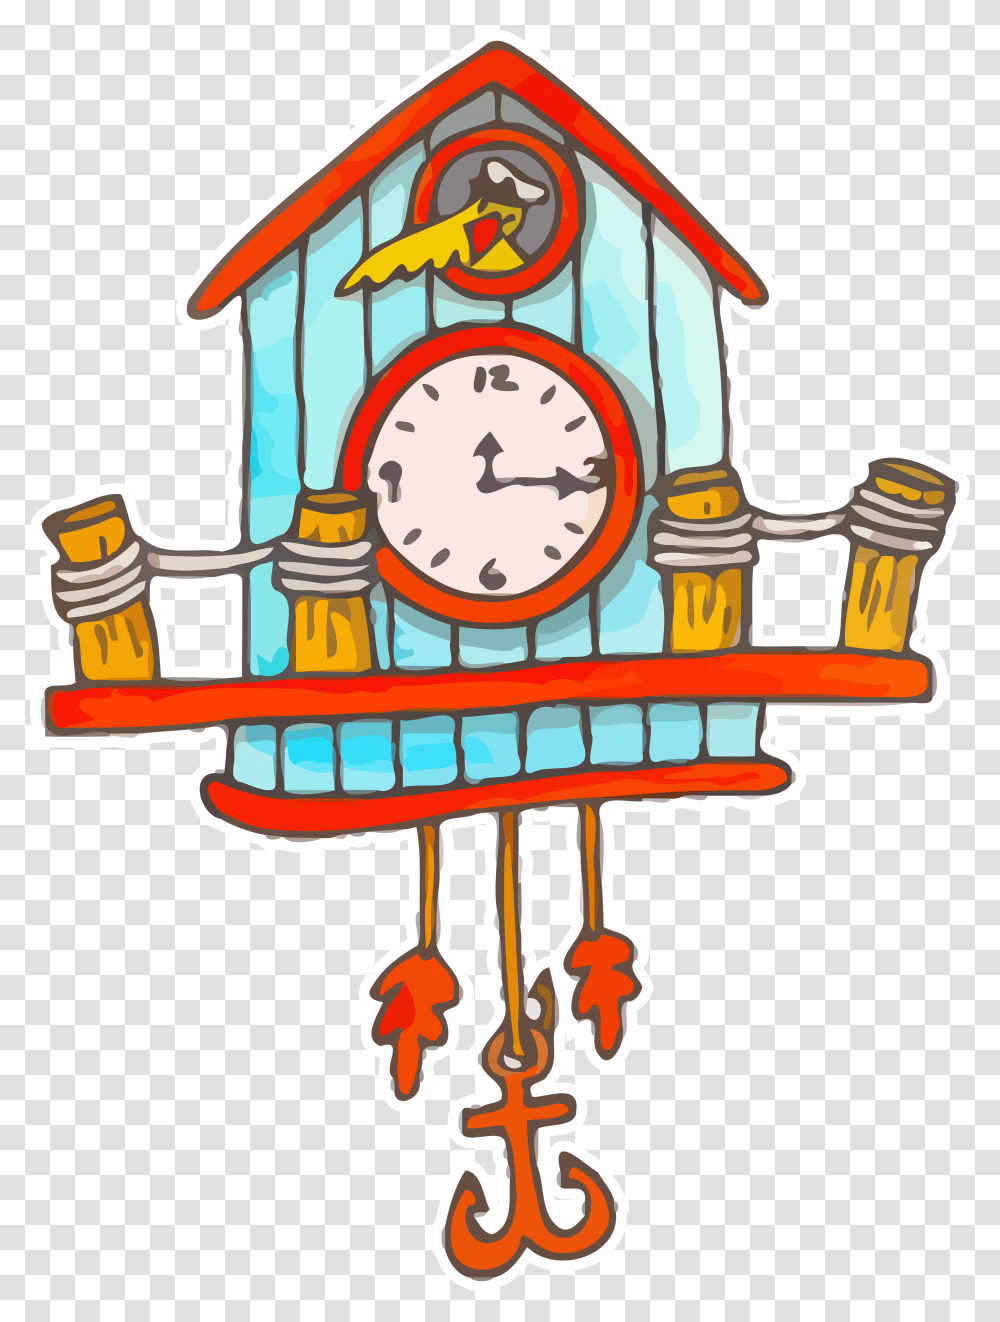 Cuckoo Cartoon Clock Clip Art Clipart, Analog Clock, Alarm Clock, Bomb, Weapon Transparent Png